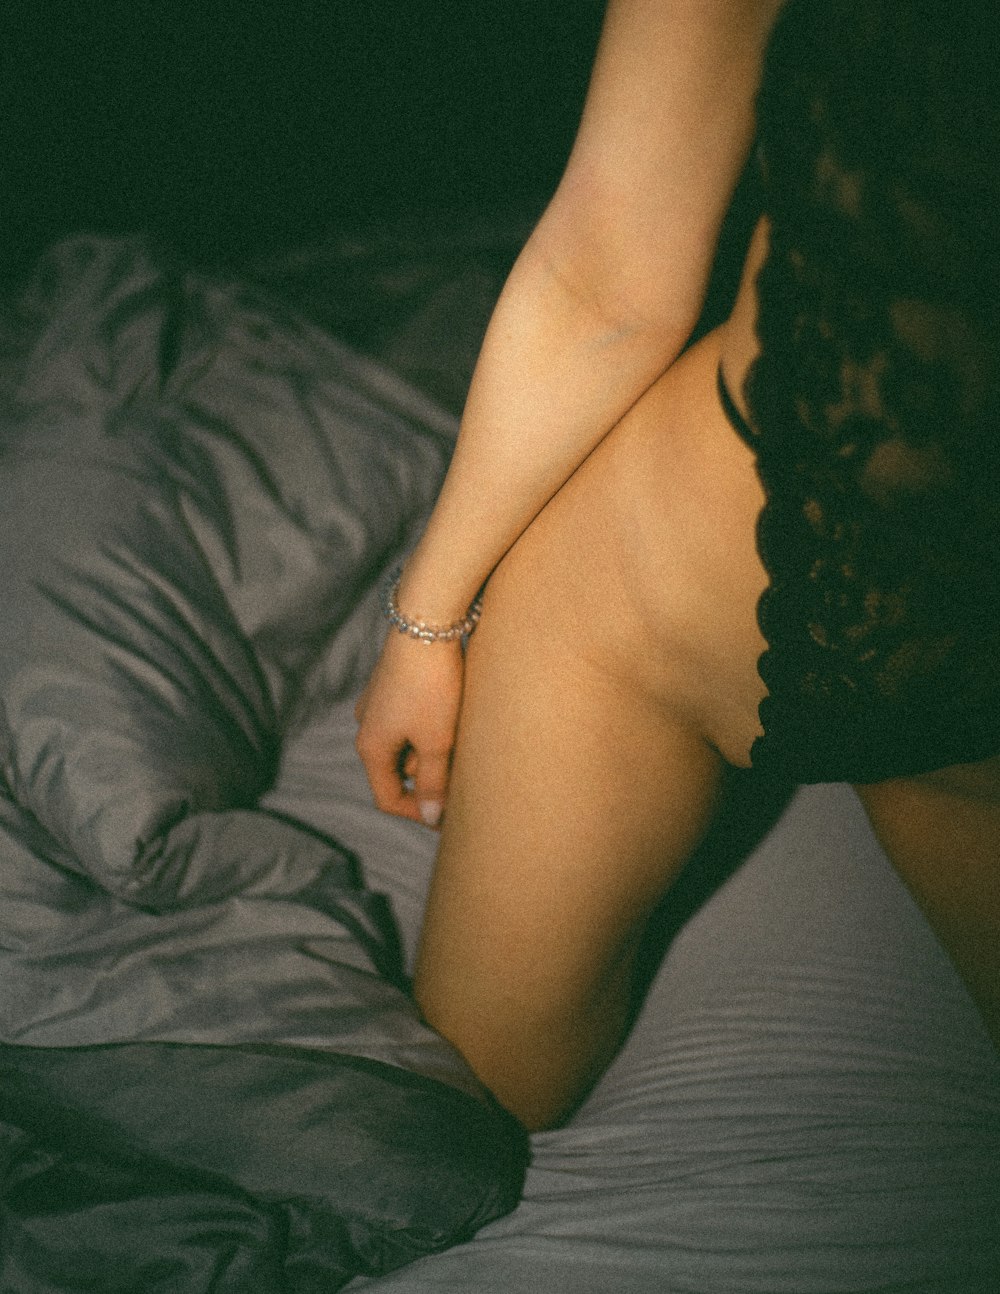 Eine nackte Frau sitzt auf einem Bett